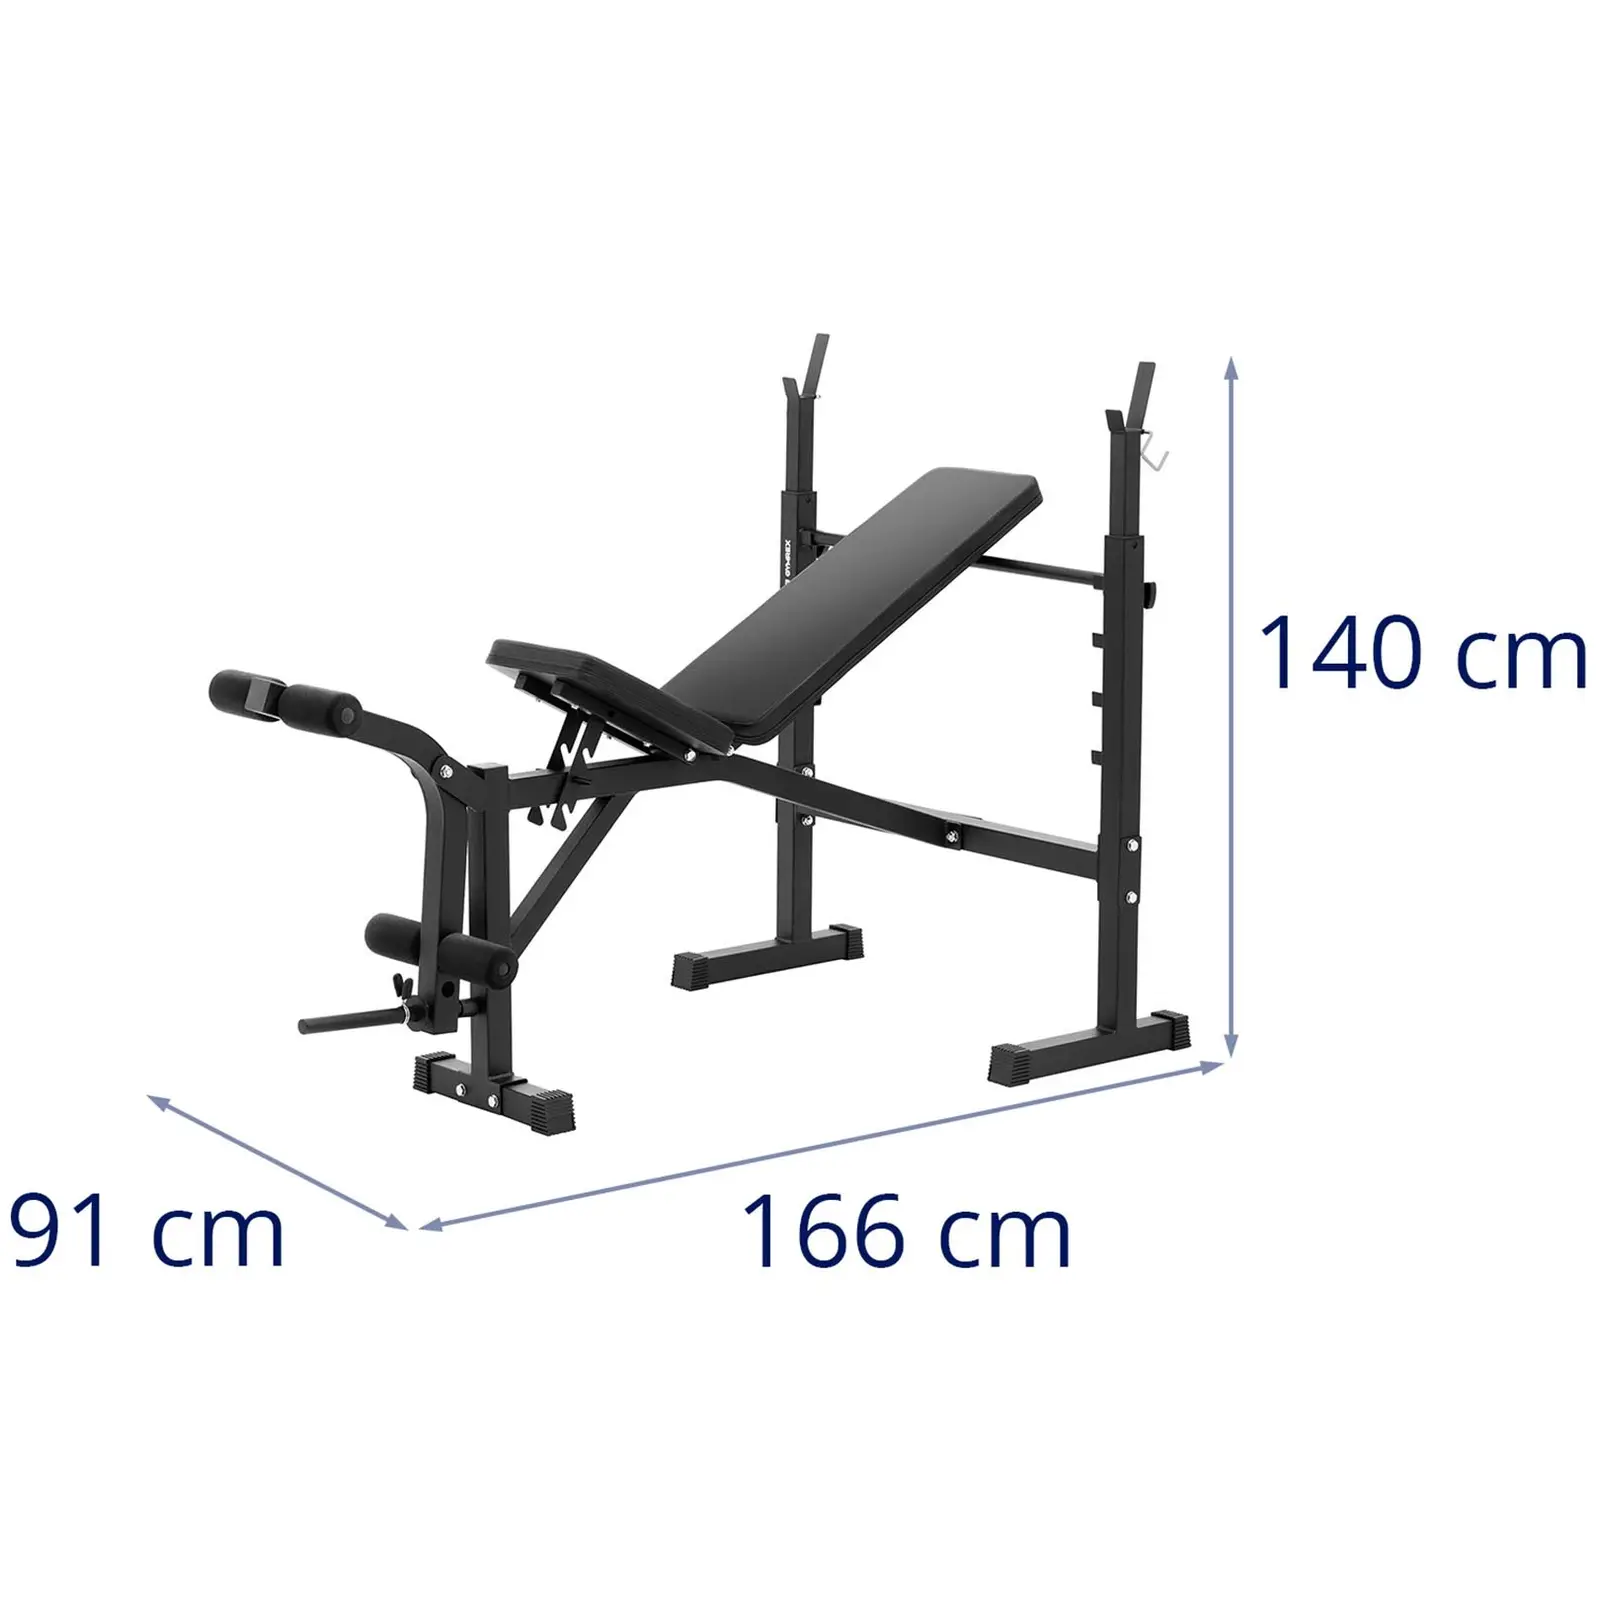 Banc de musculation multifonctionnel - capacité de charge jusqu'à 100 kg - réglable - inclinaison de 180 - 152°